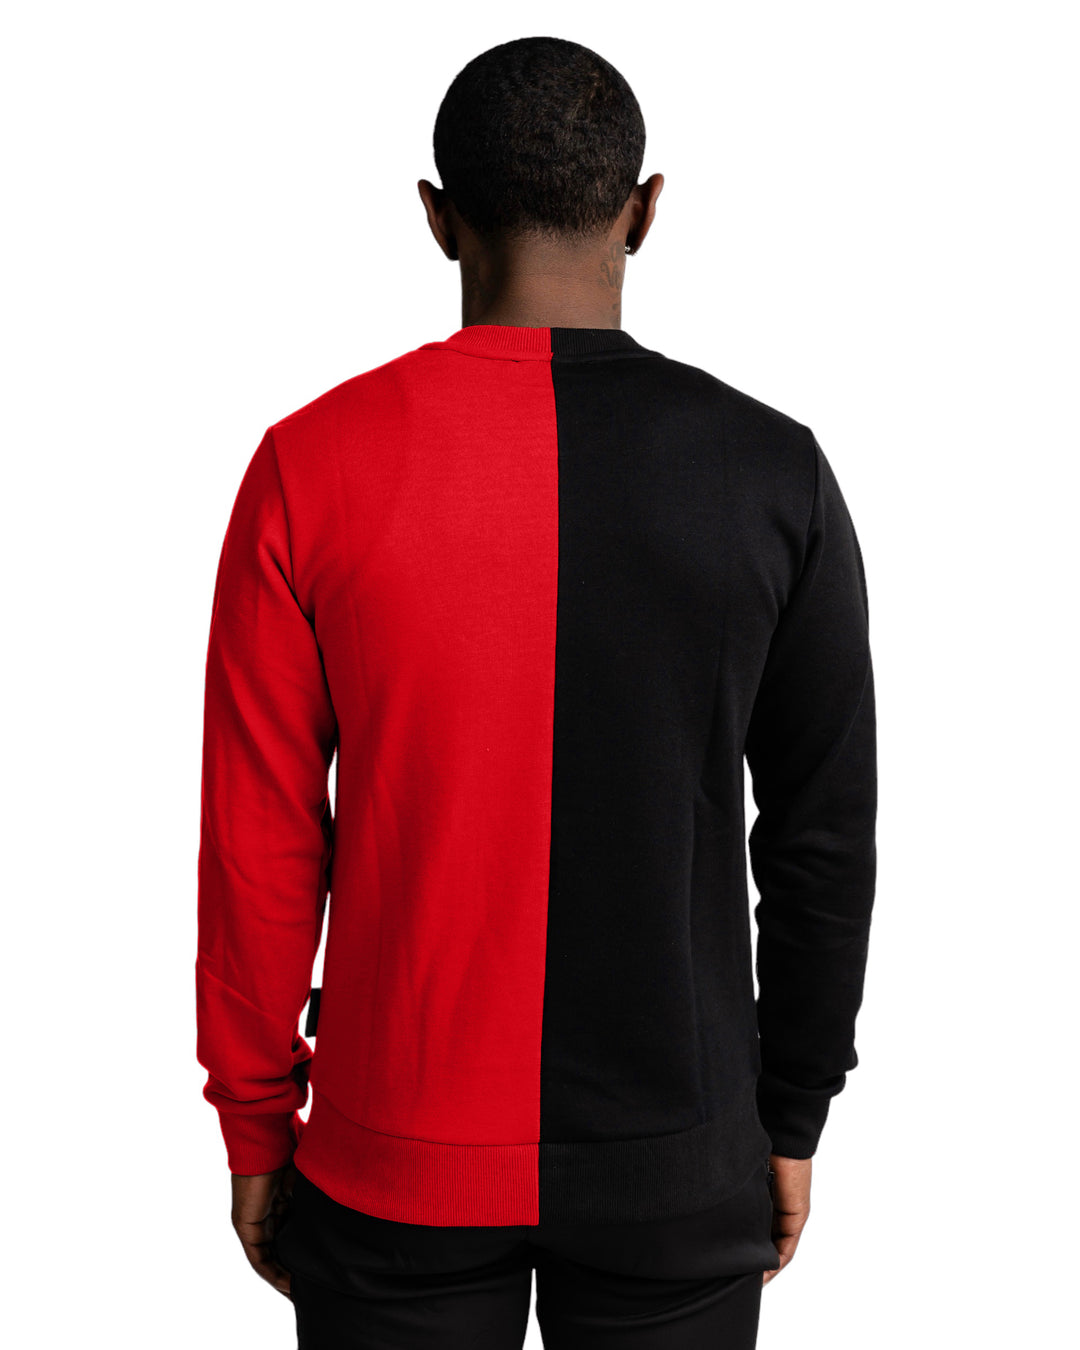 Split Sweater in Black/Red